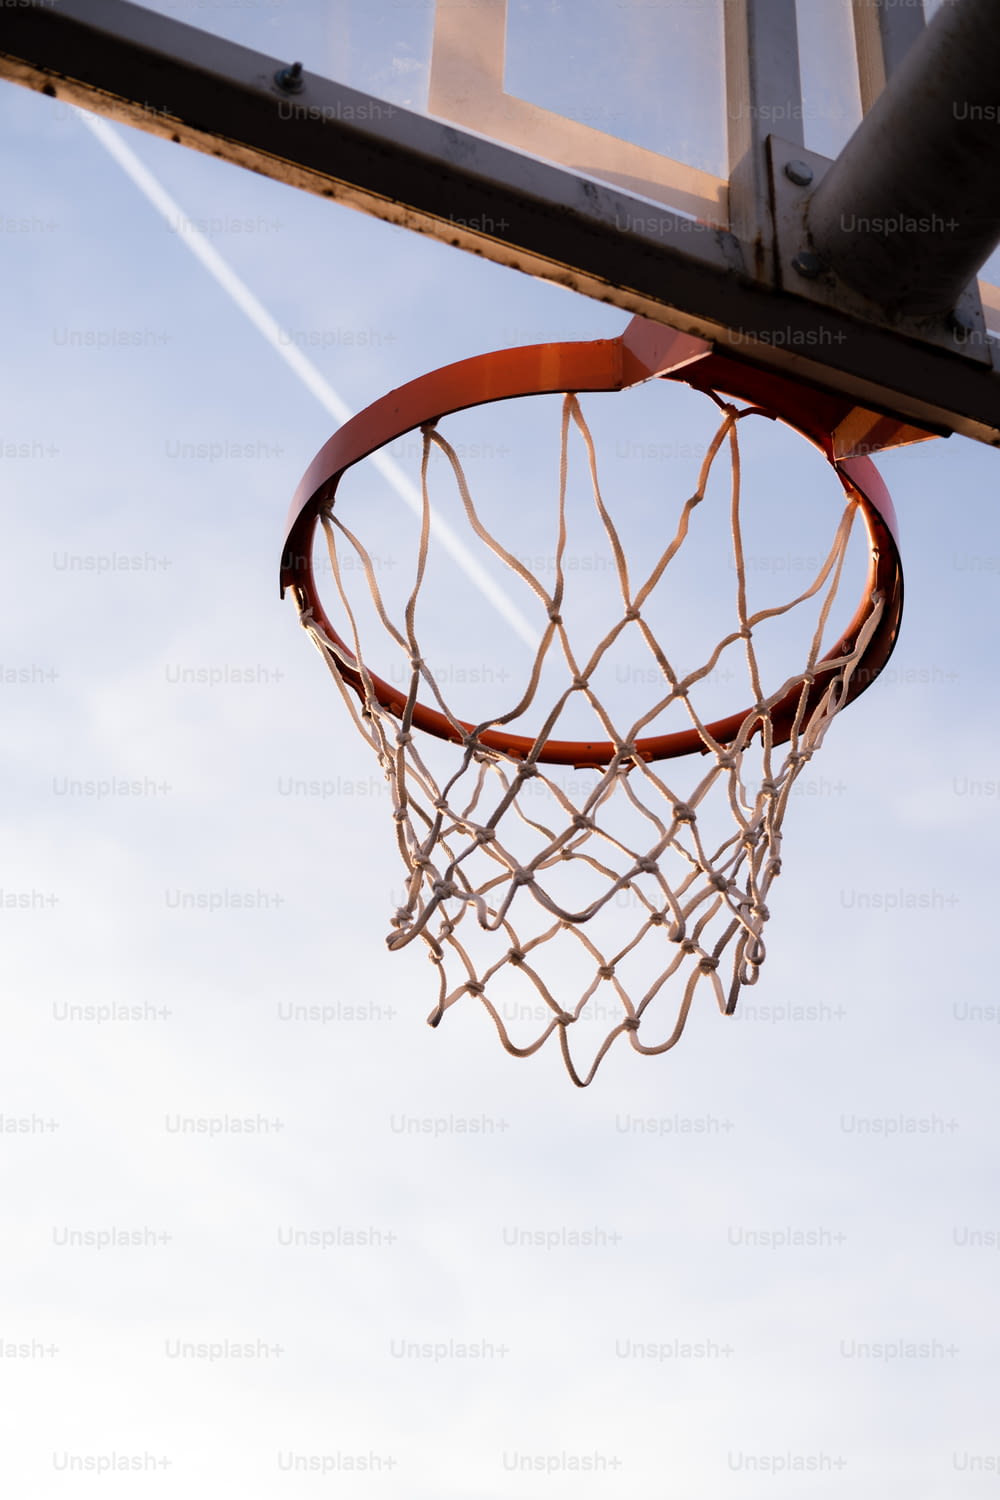 Un ballon de basket traversant le bord d’un panier de basket-ball